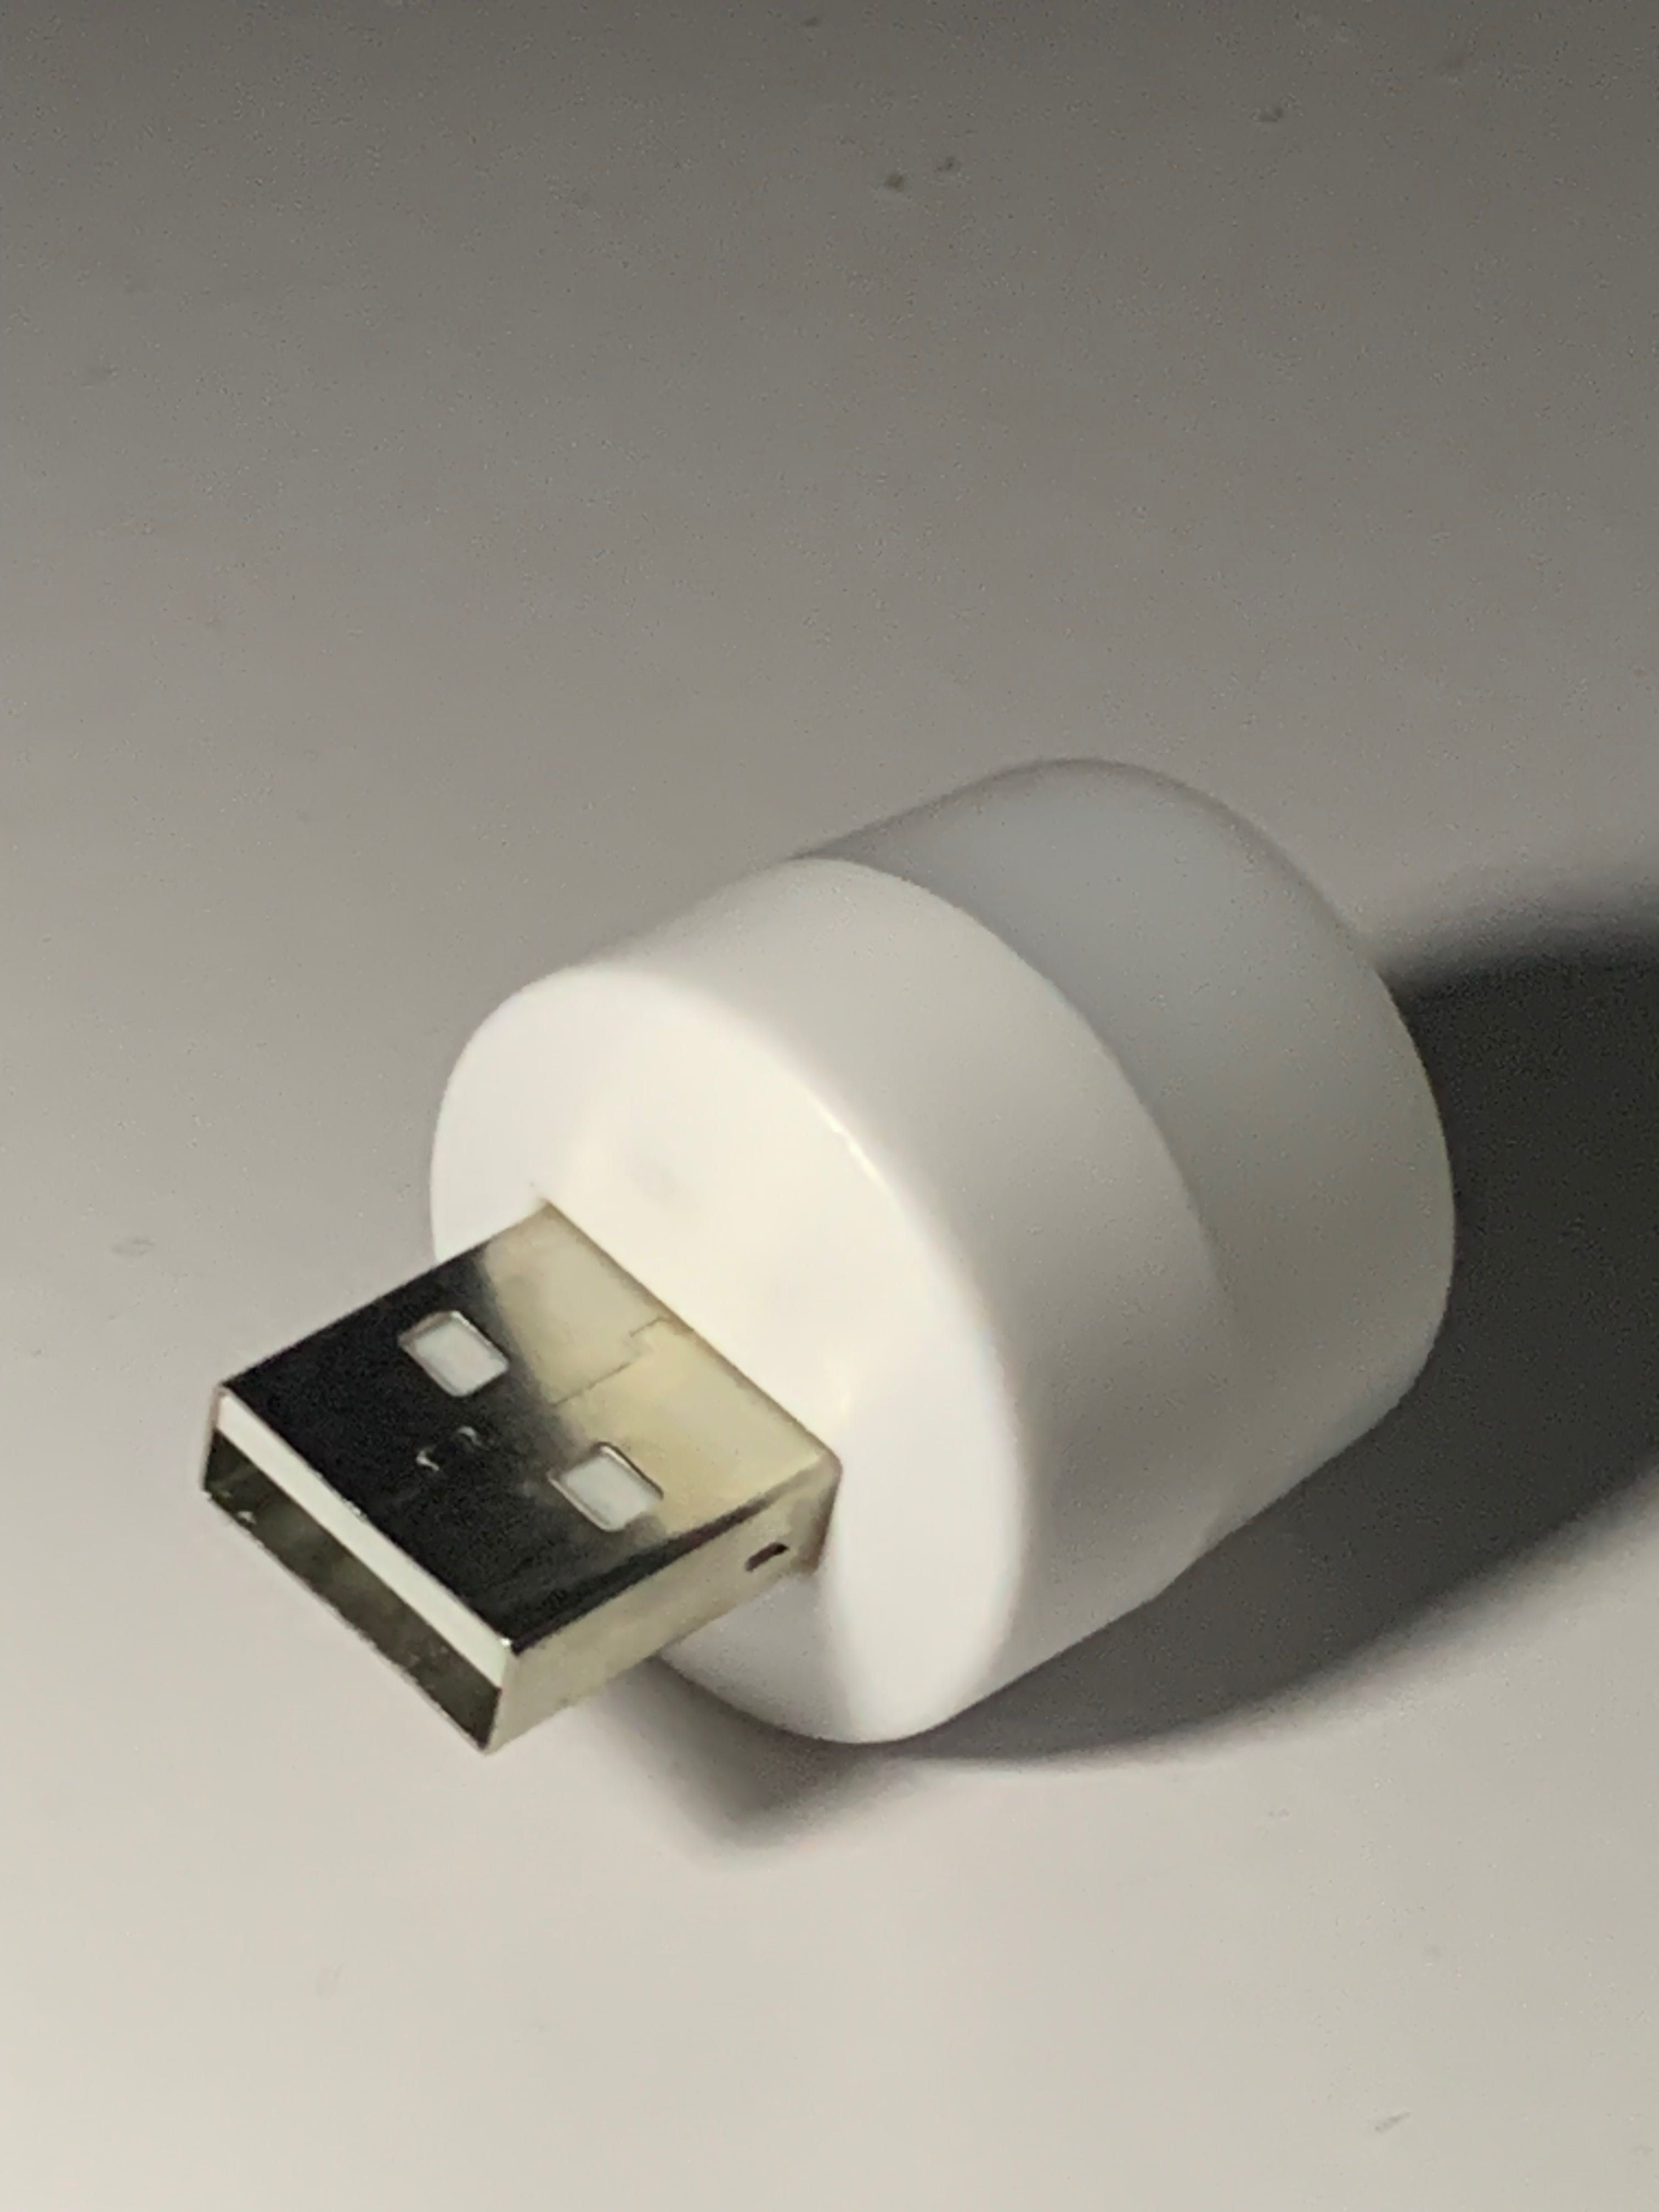 Світлодіодний USB ліхтарик - нічник 1W USB LED Light (Білий)